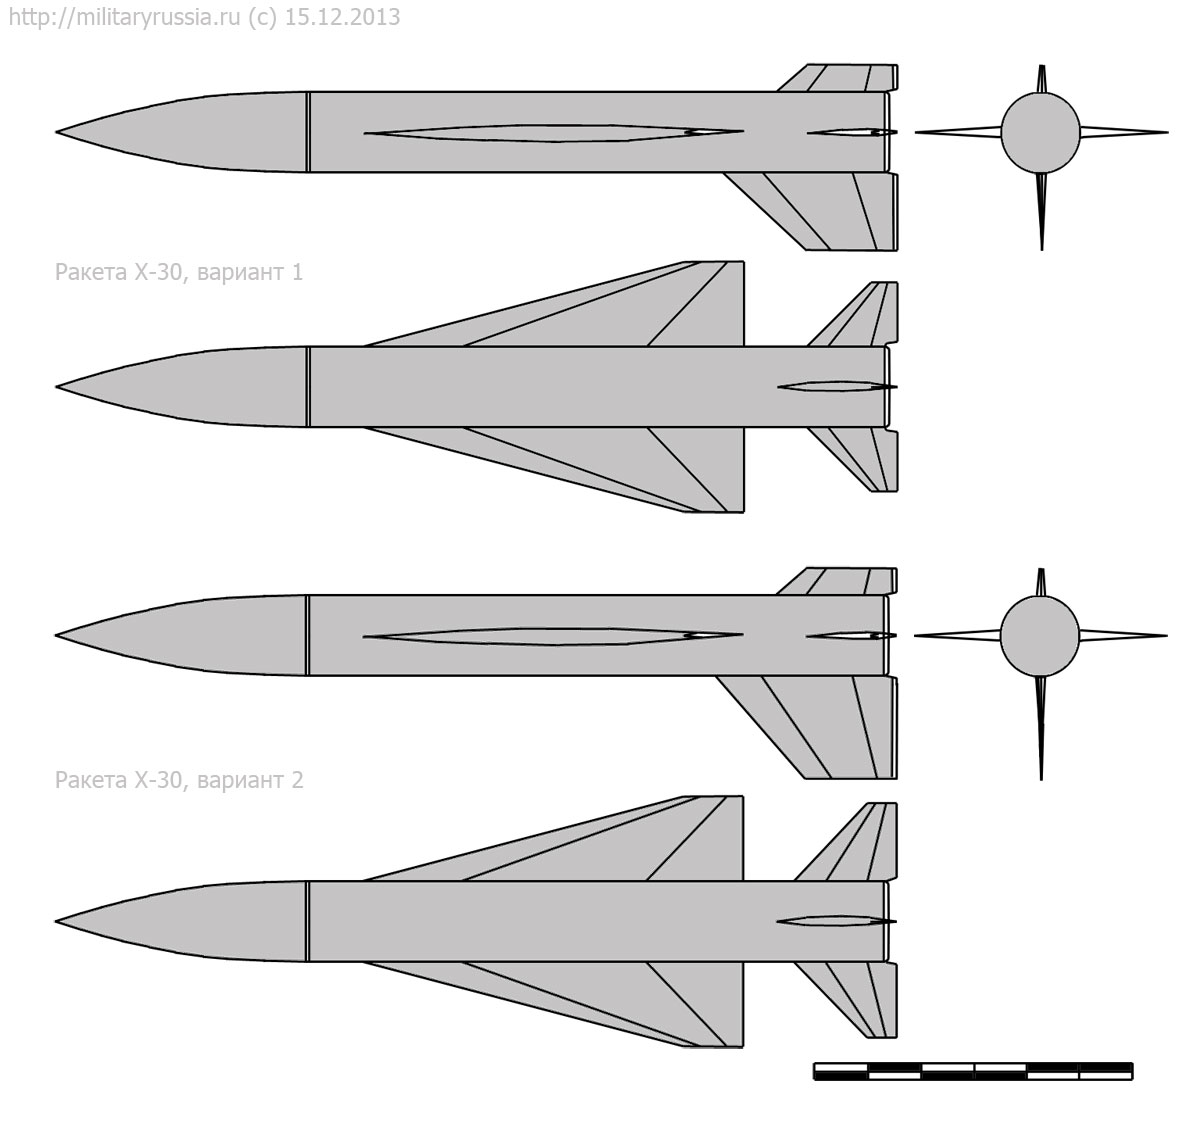 Лучшие баллистические и крылатые ракеты мира - общее представление и история разработки, топ-10, описания и характеристики, боевое применение